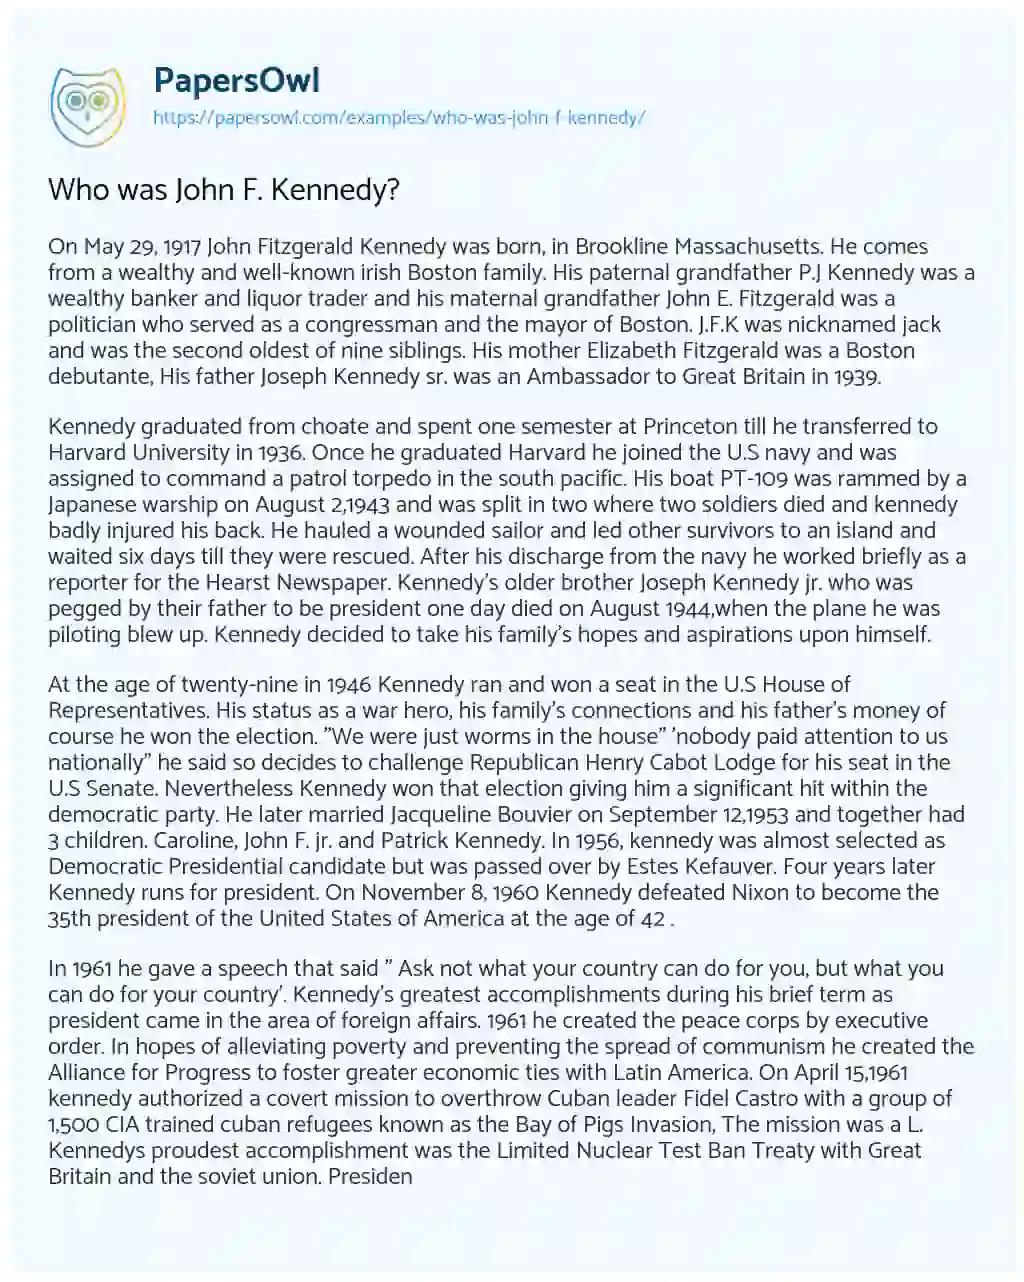 Essay on Who was John F. Kennedy?